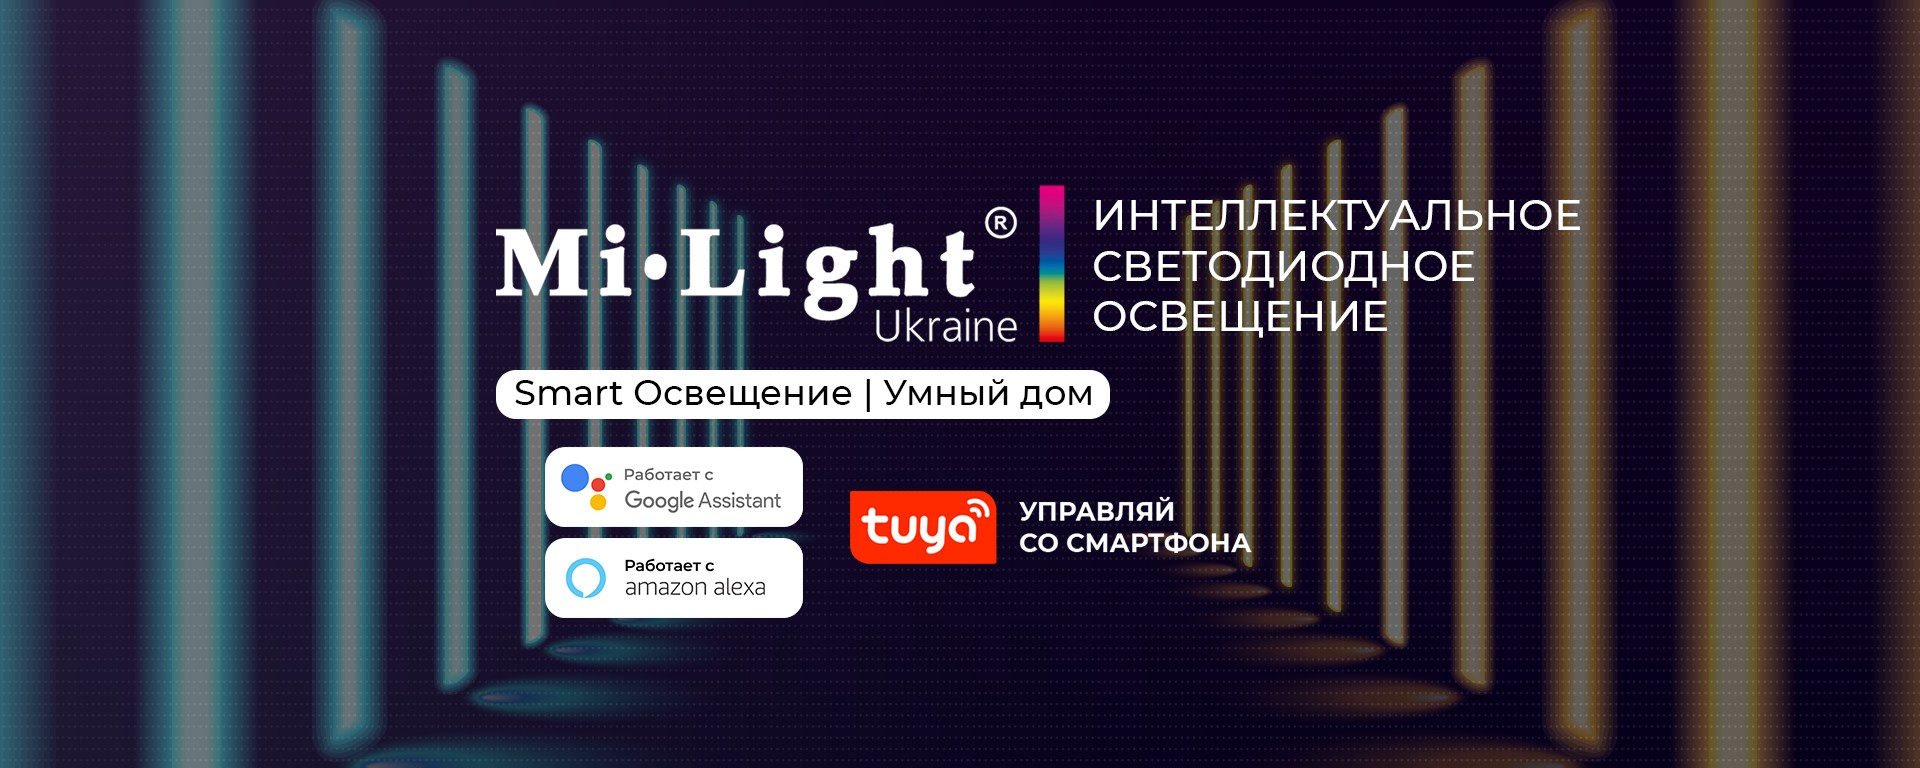 Управляйте освещением MiLight с умным домом и бизнес-пространствами через Tuya Smart App